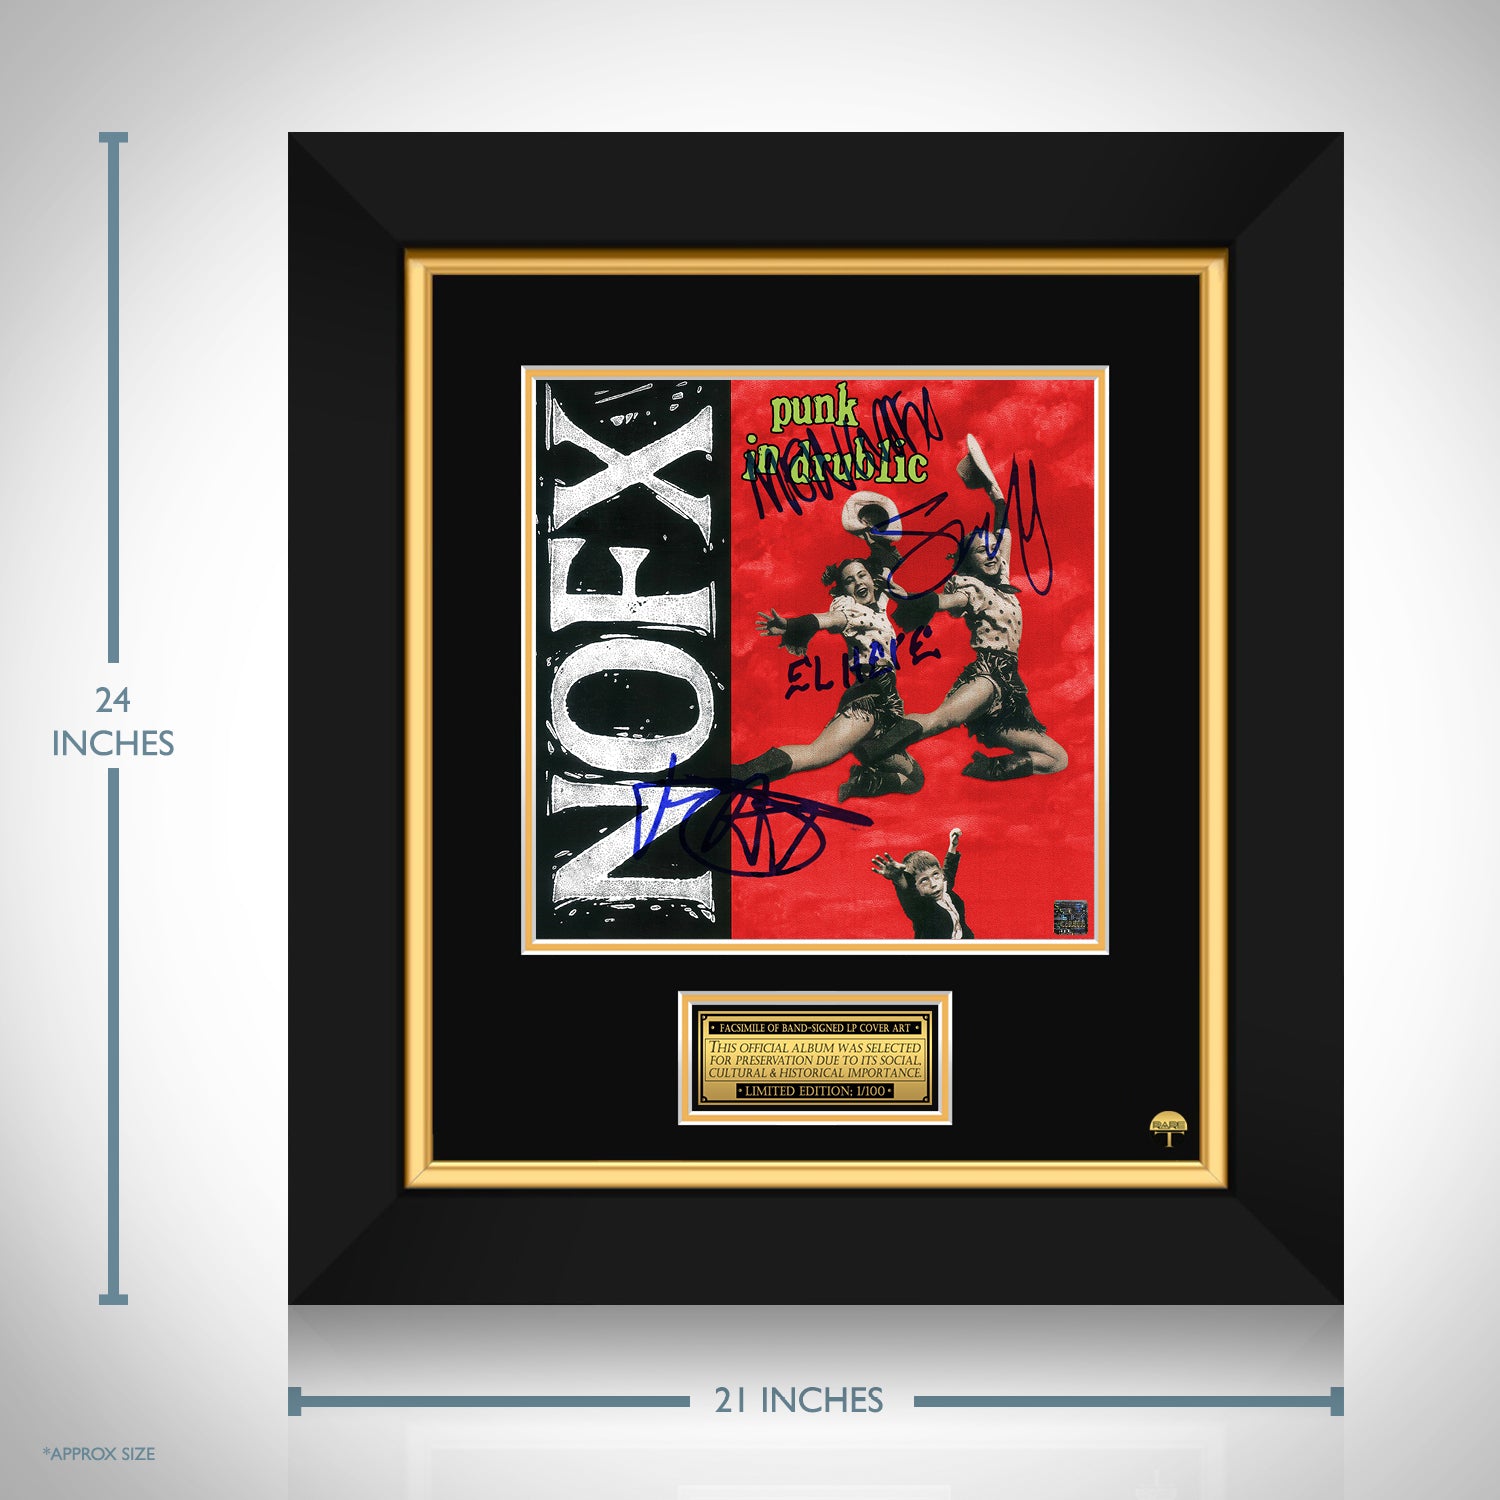 NOFX - Punk in Drublic LP Cover Limited Signature Edition Custom 